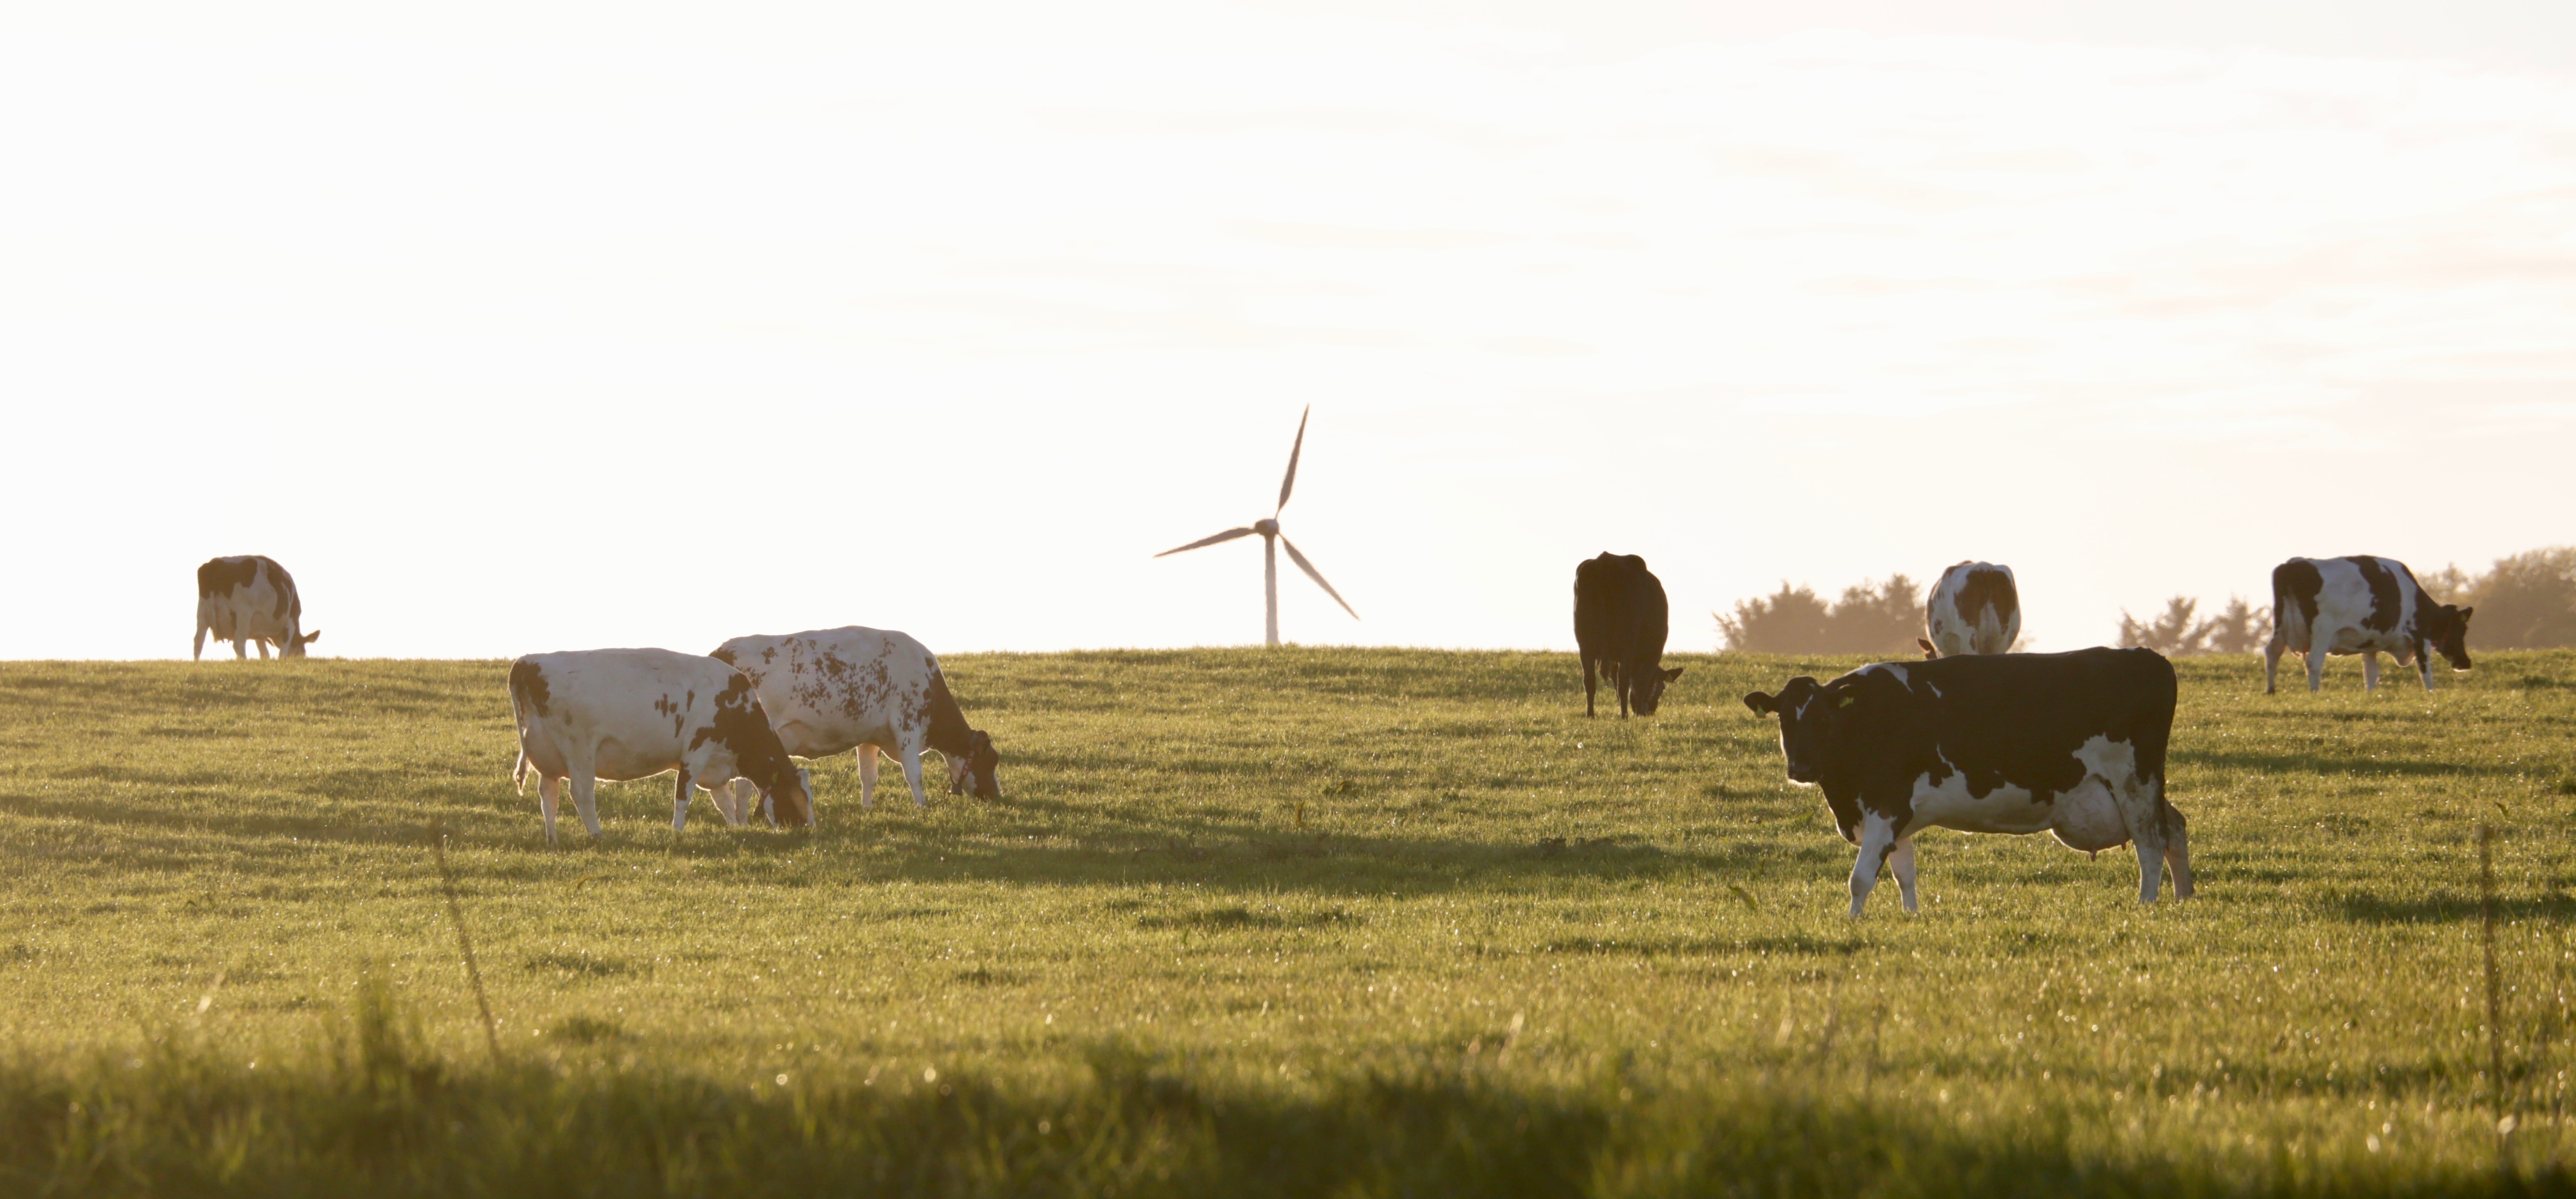 køer på græs med en vindmølle i baggrunden